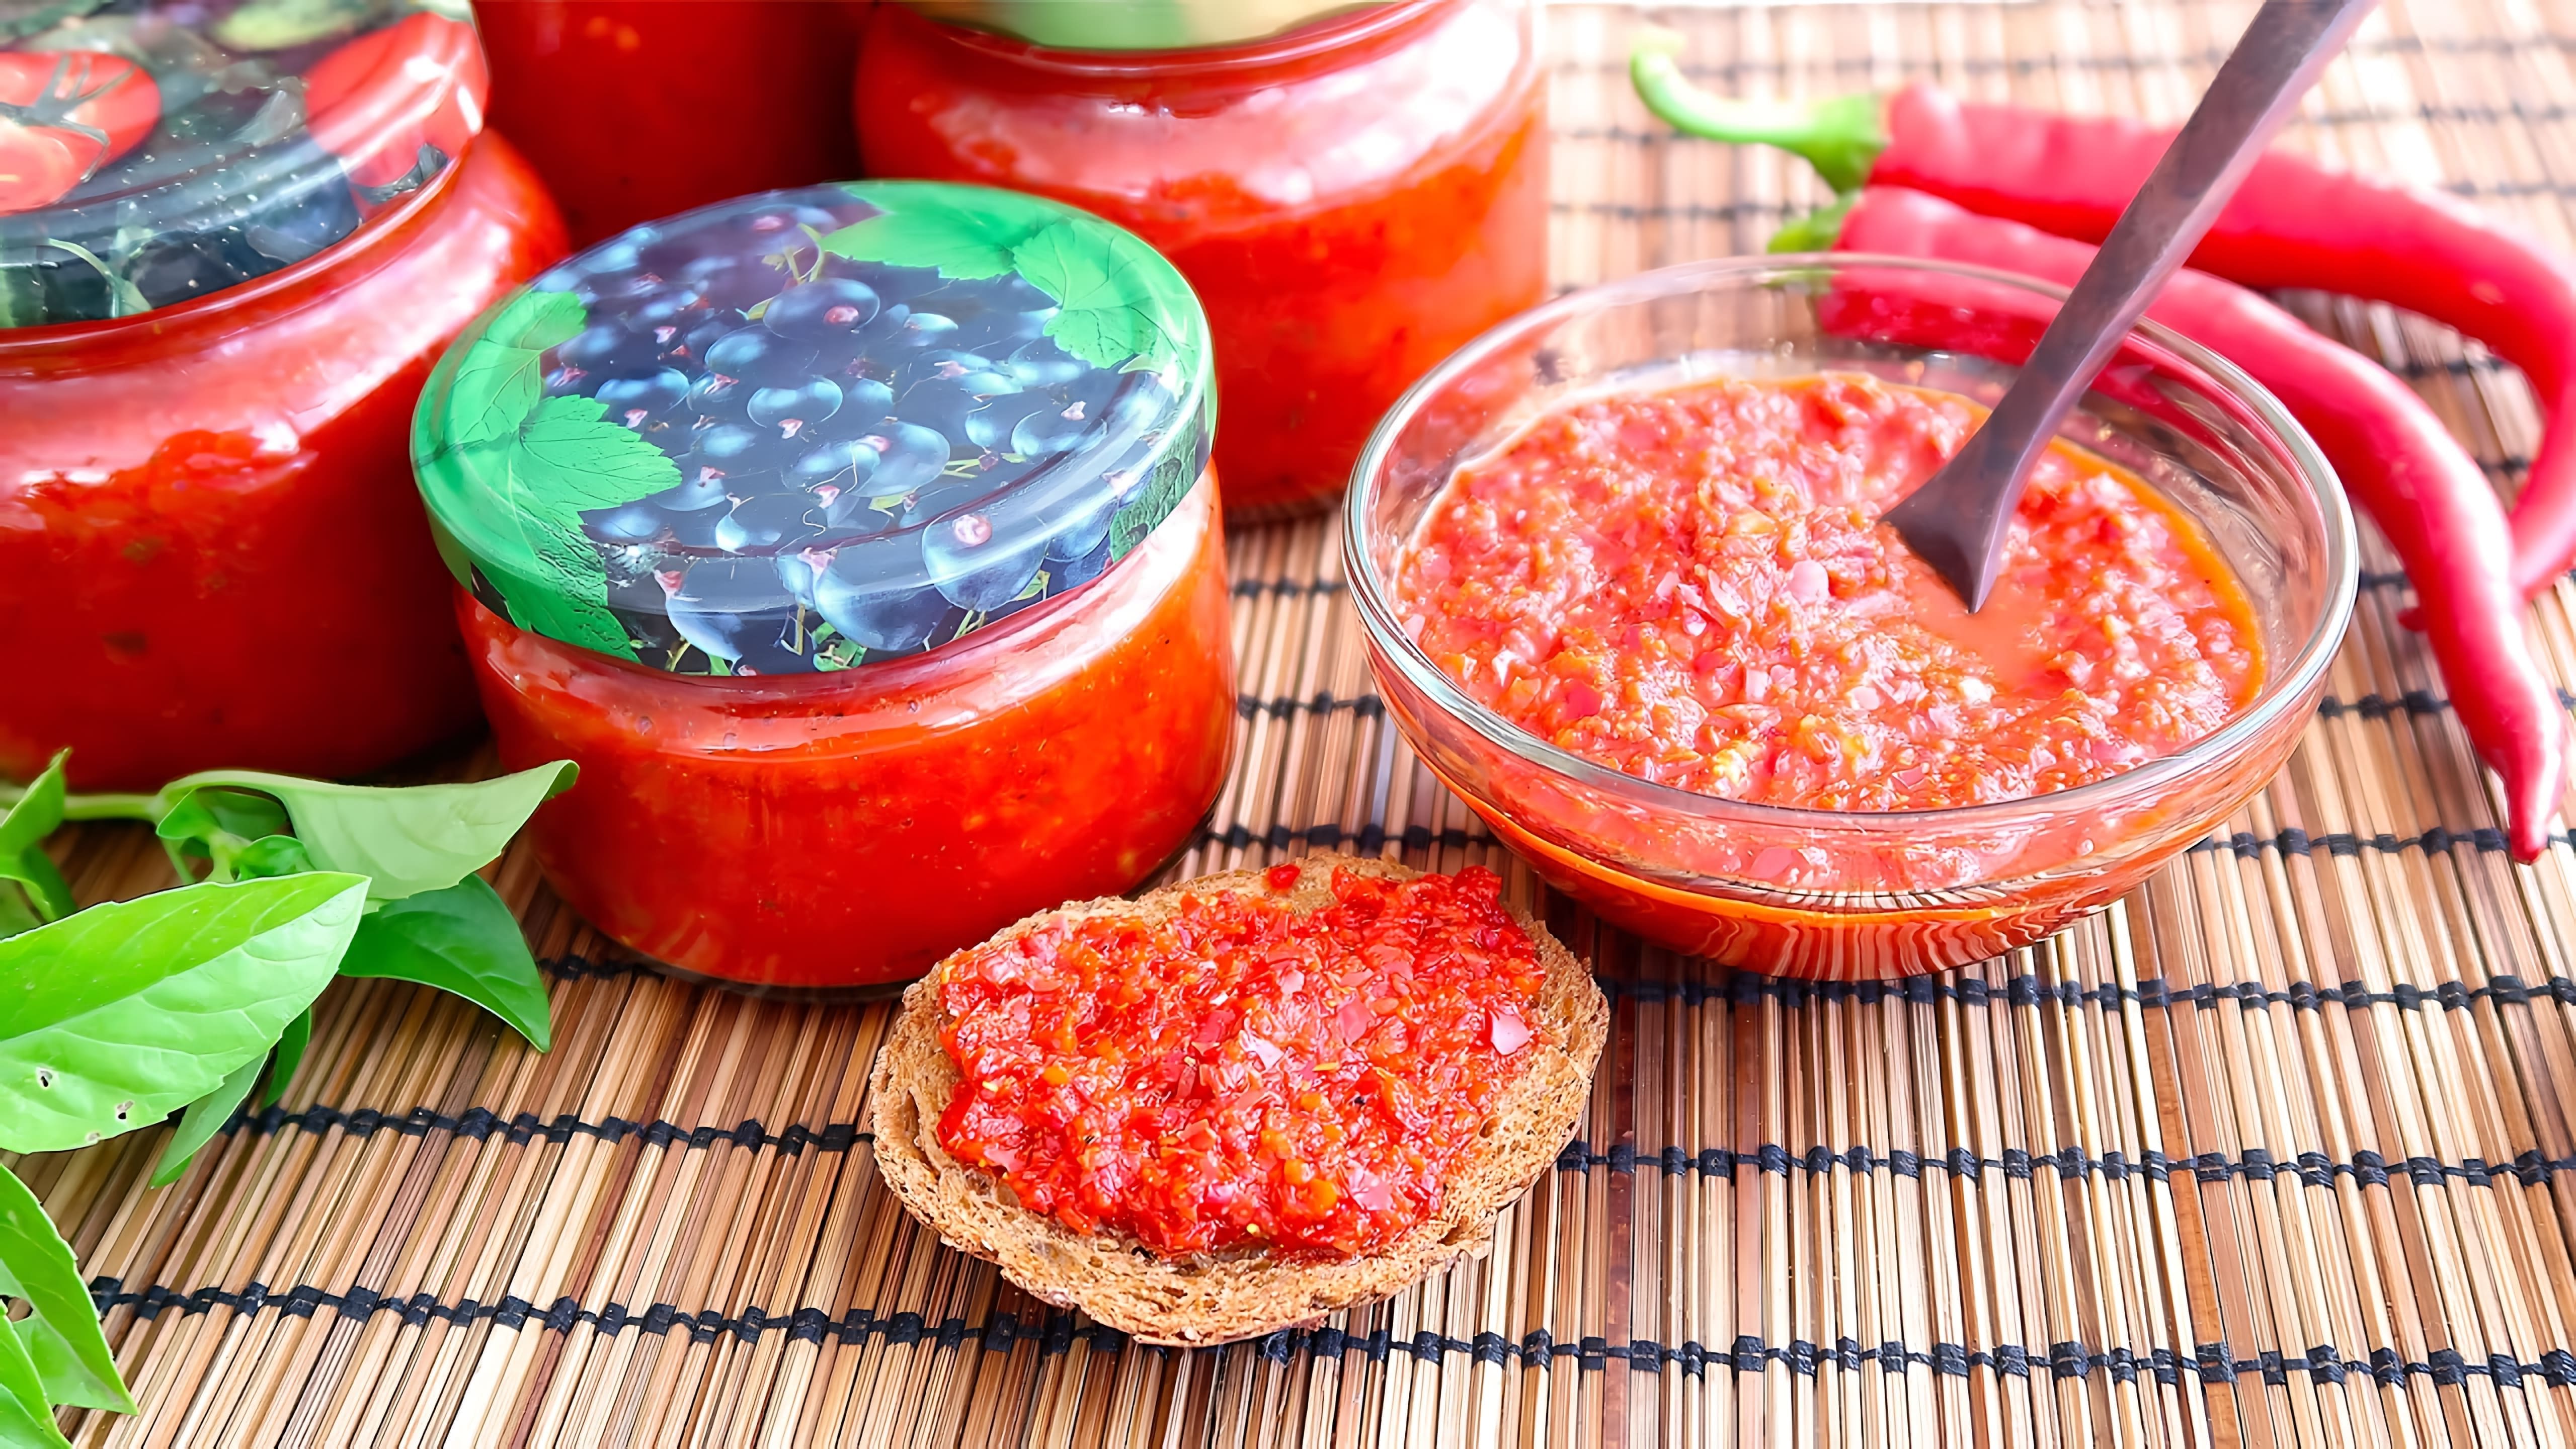 В этом видео демонстрируется рецепт приготовления острой аджики без помидоров и болгарского перца